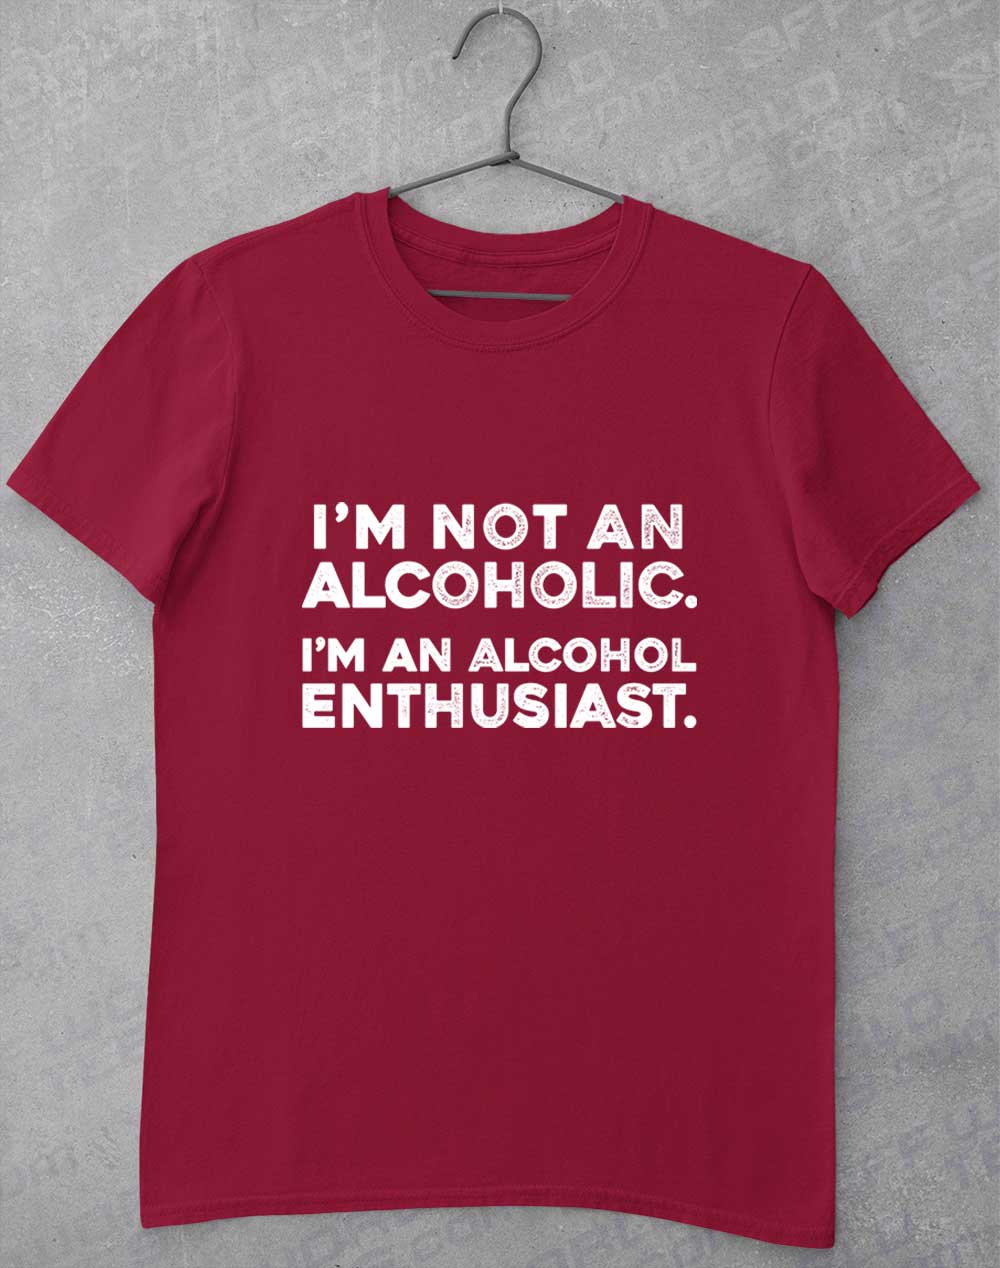 Cardinal Red - Not an Alcoholic T-Shirt